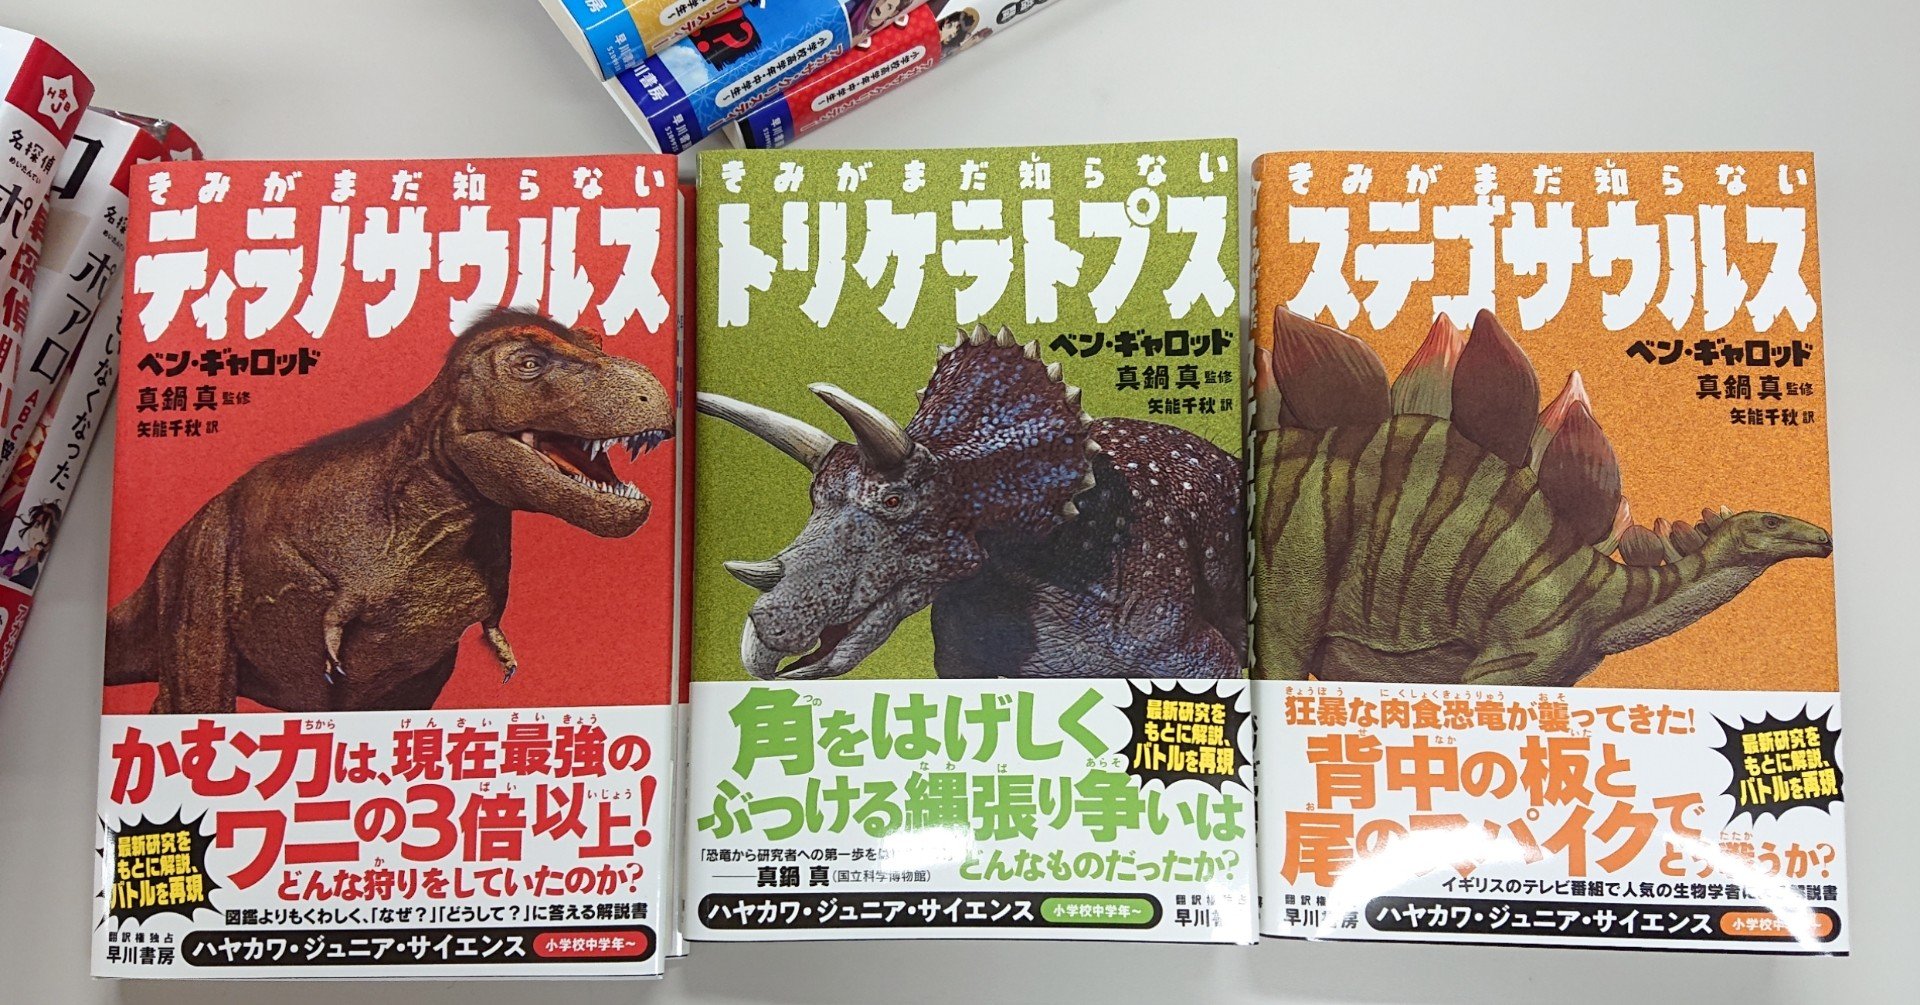 日経新聞で五つ星 竹内薫氏が選ぶ3冊 きみがまだ知らないティラノサウルス 自分の頭で考えるワクワクをくれる 恐竜クイズが止まらない など感想も到着 ハヤカワ ジュニア サイエンス Hayakawa Books Magazines B